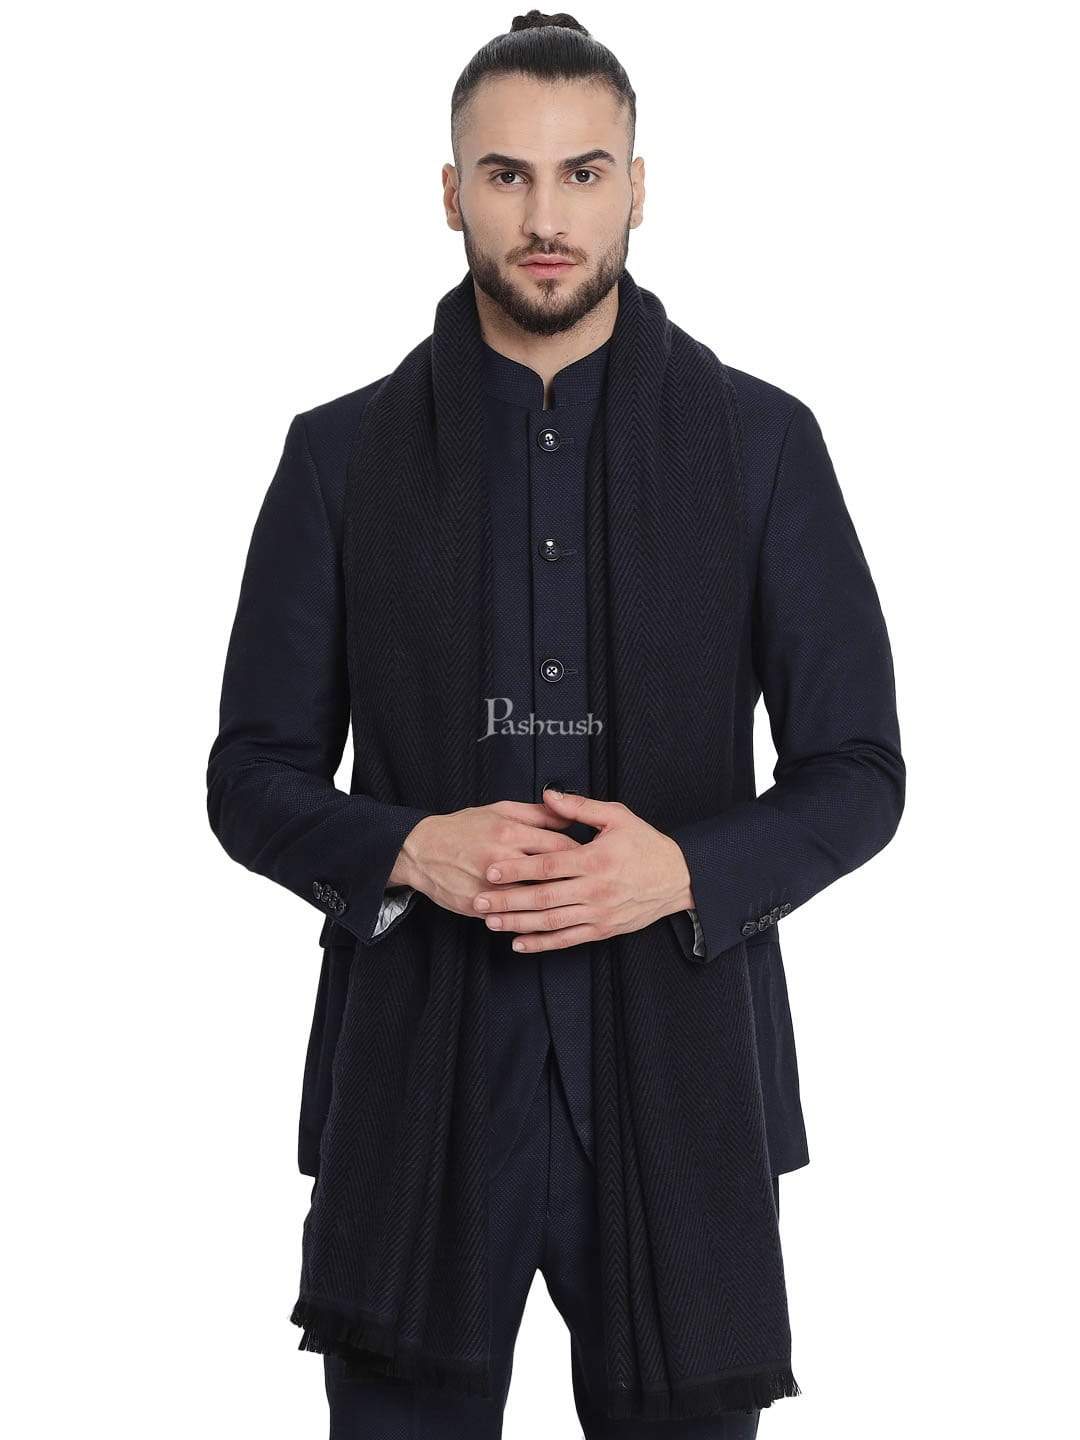 Pashtush India 100x200 Pashtush Mens Stole, Fine wool with paisley jacquard weave, Rich Black